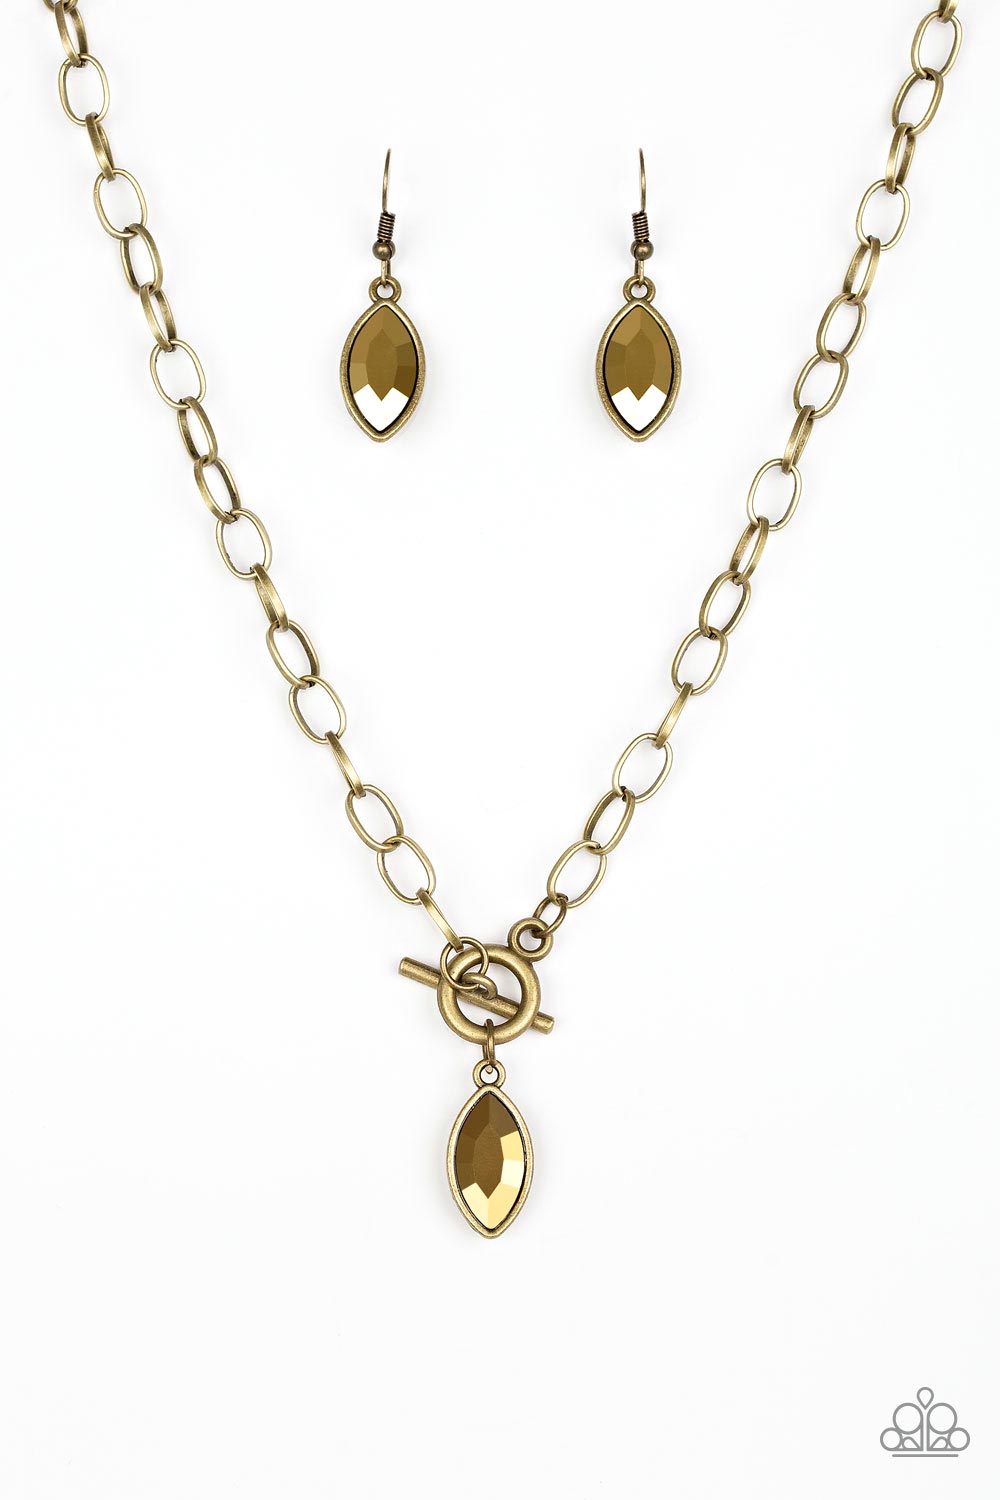 Club Sparkle - Brass Necklace freeshipping - JewLz4u Gemstone Gallery